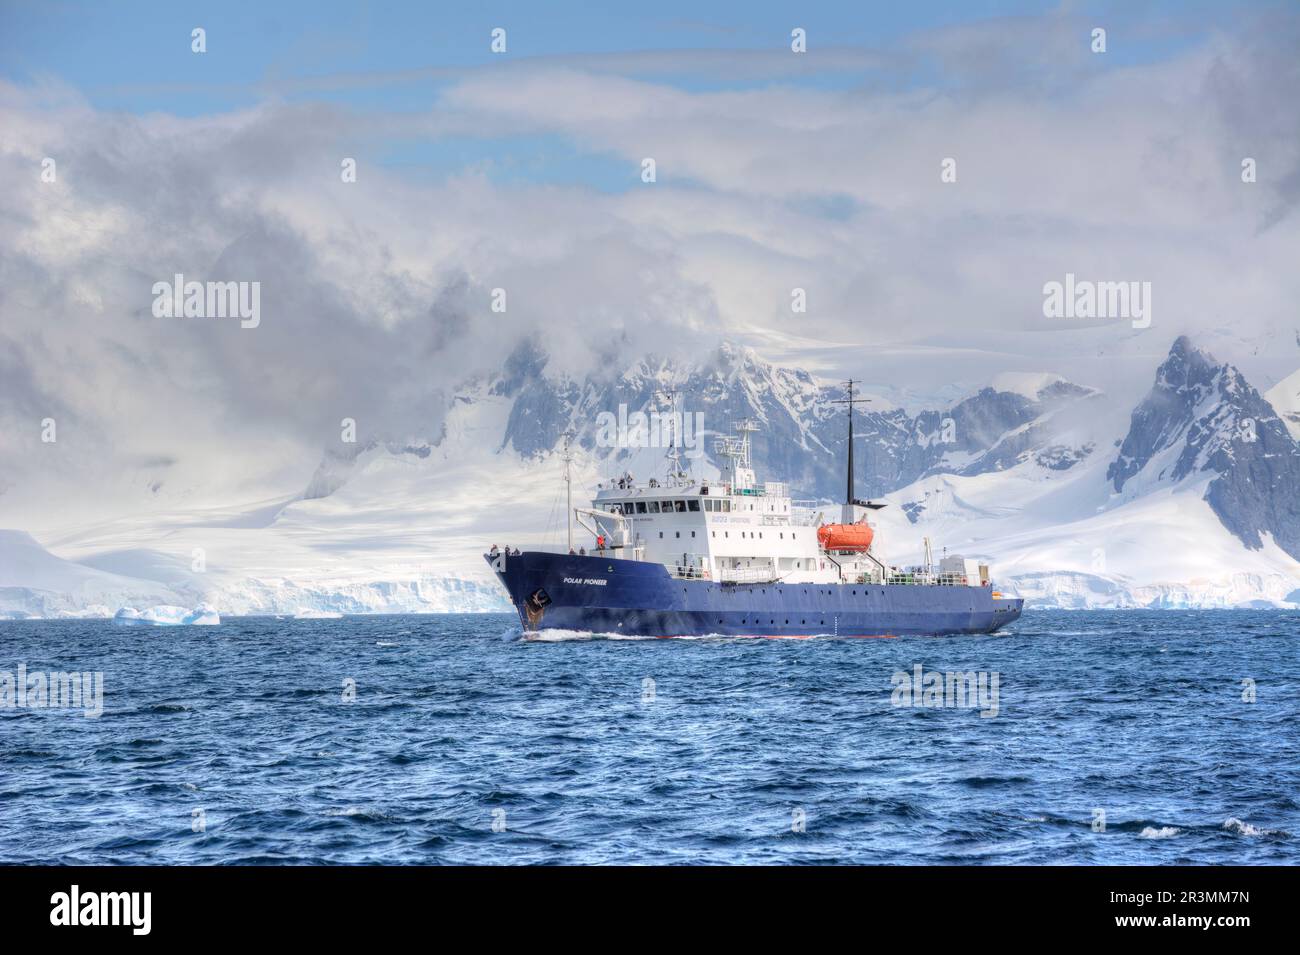 Polarpionierschiff von aurora Expeditions auf einer Antarktis-Kreuzfahrt Stockfoto